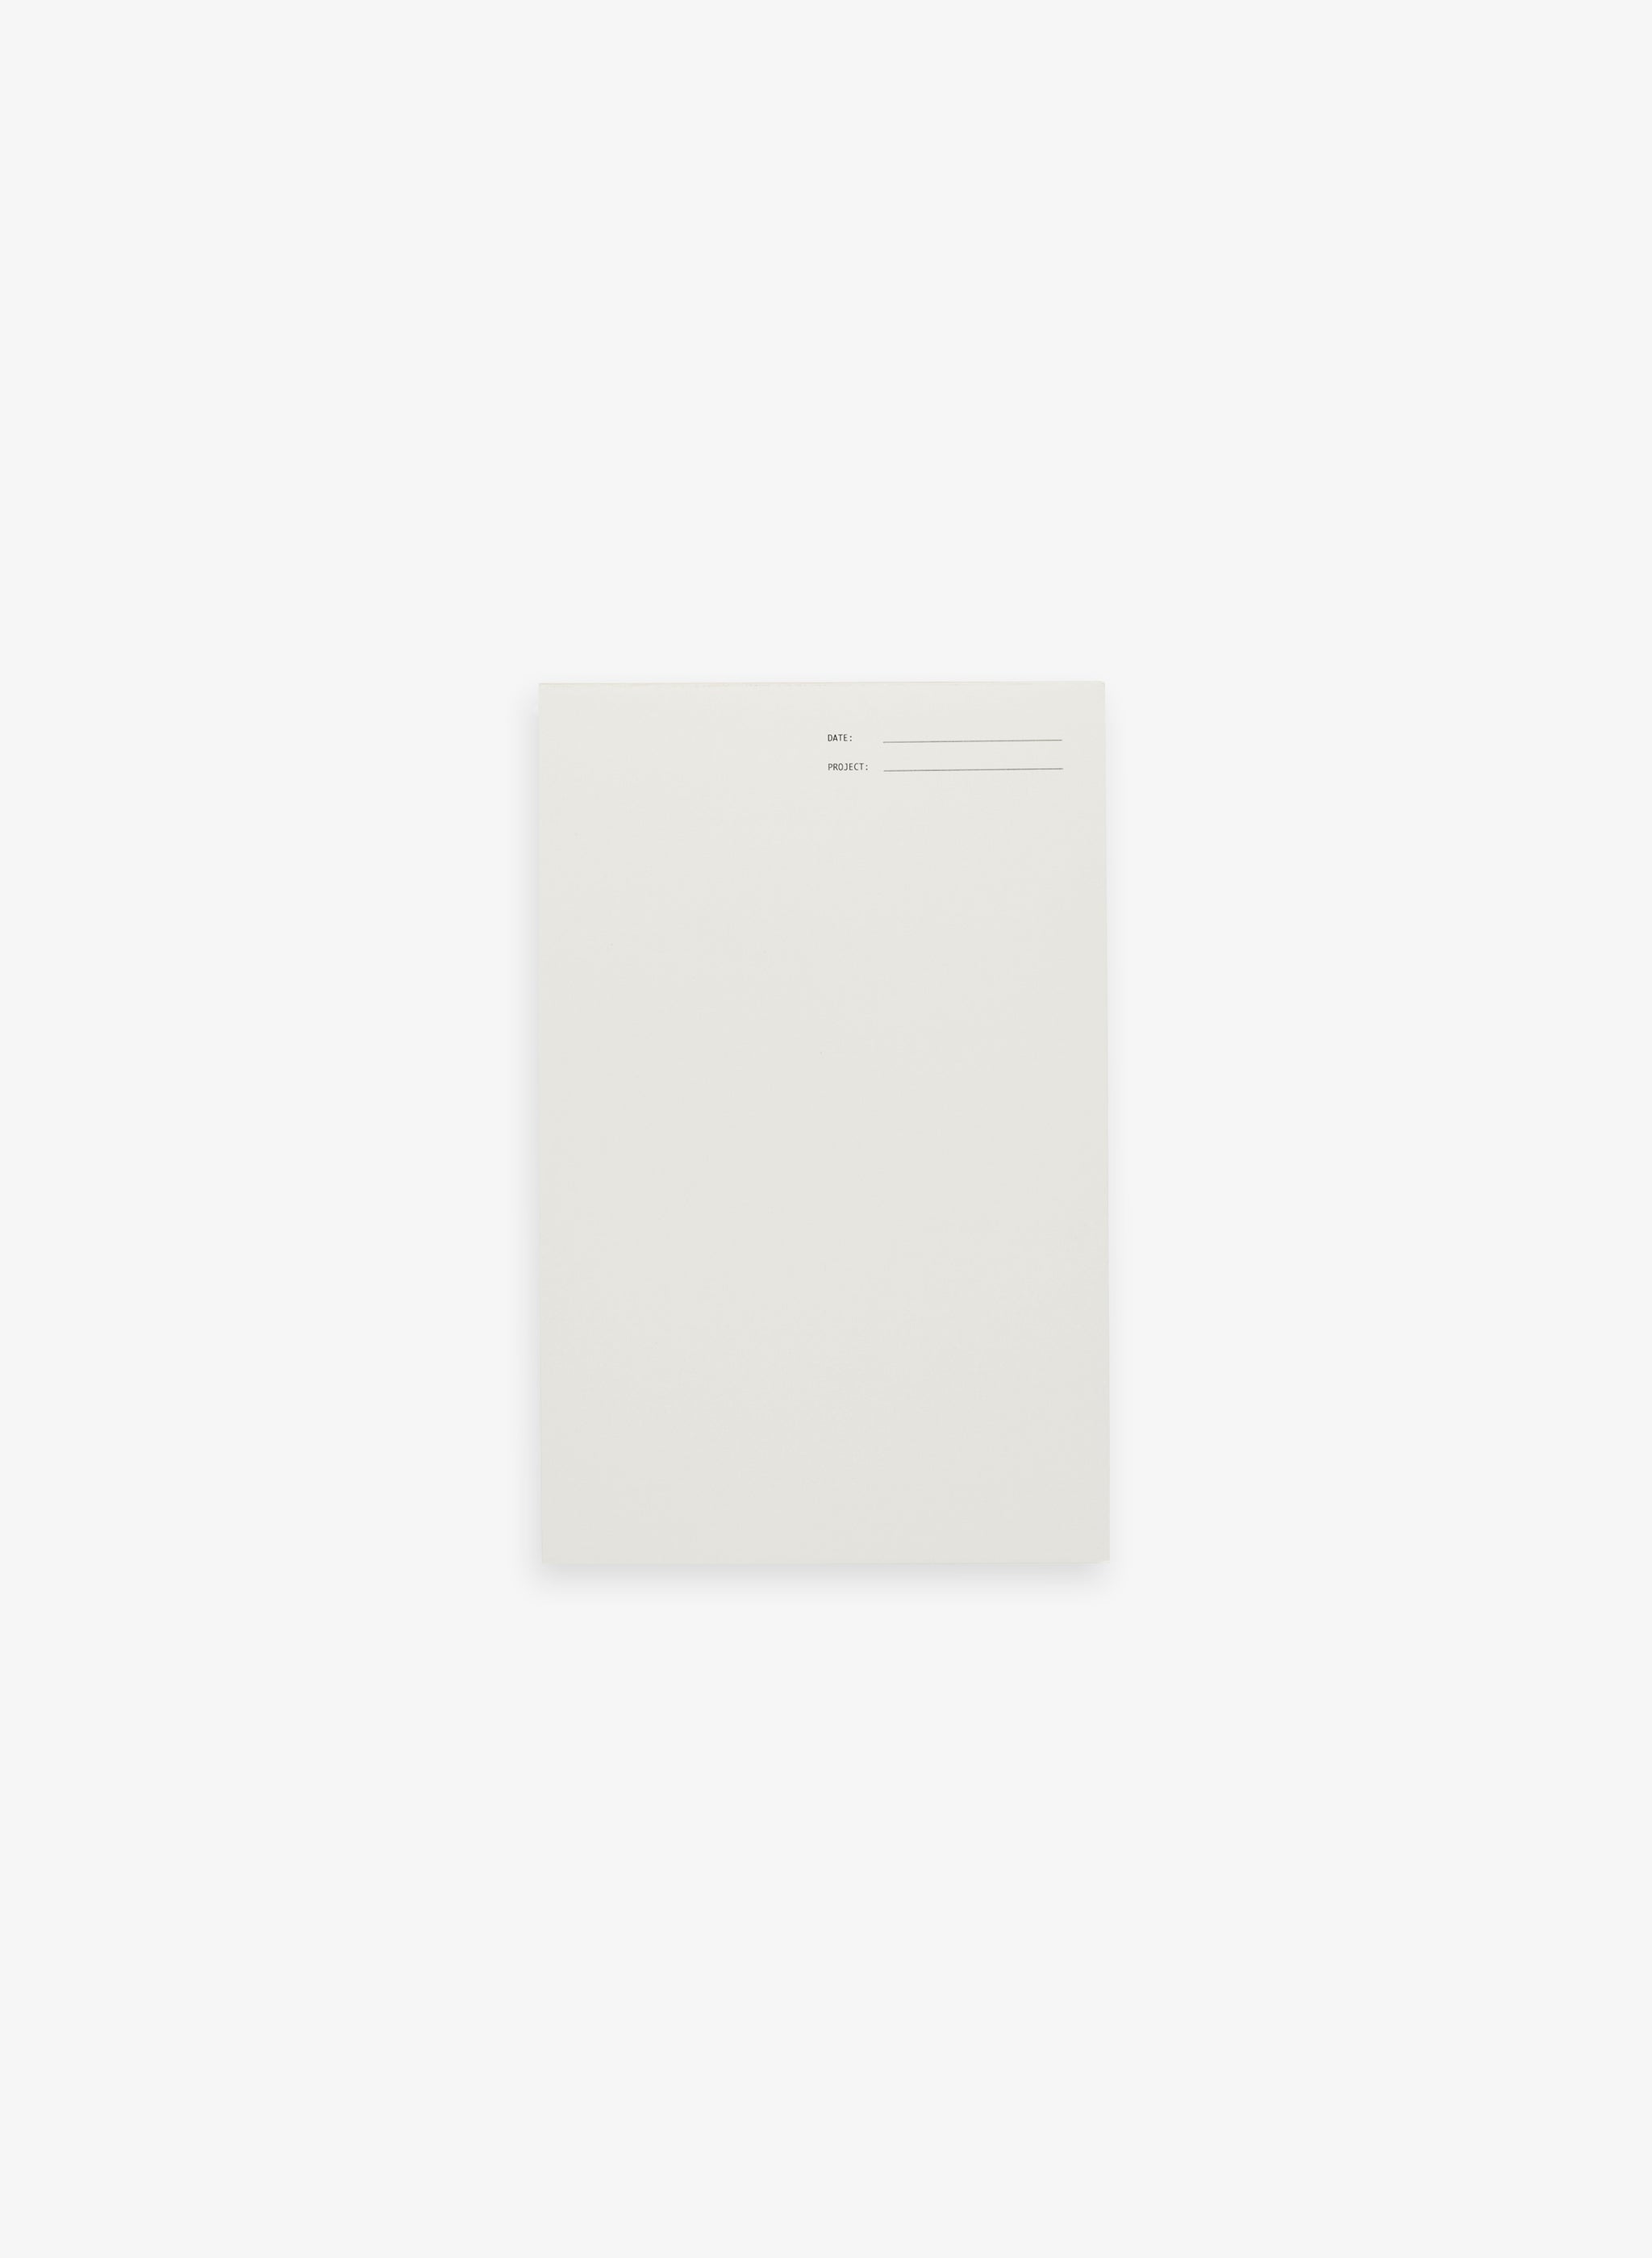 Blank Notepad 5.5 x 8.5 - Natural